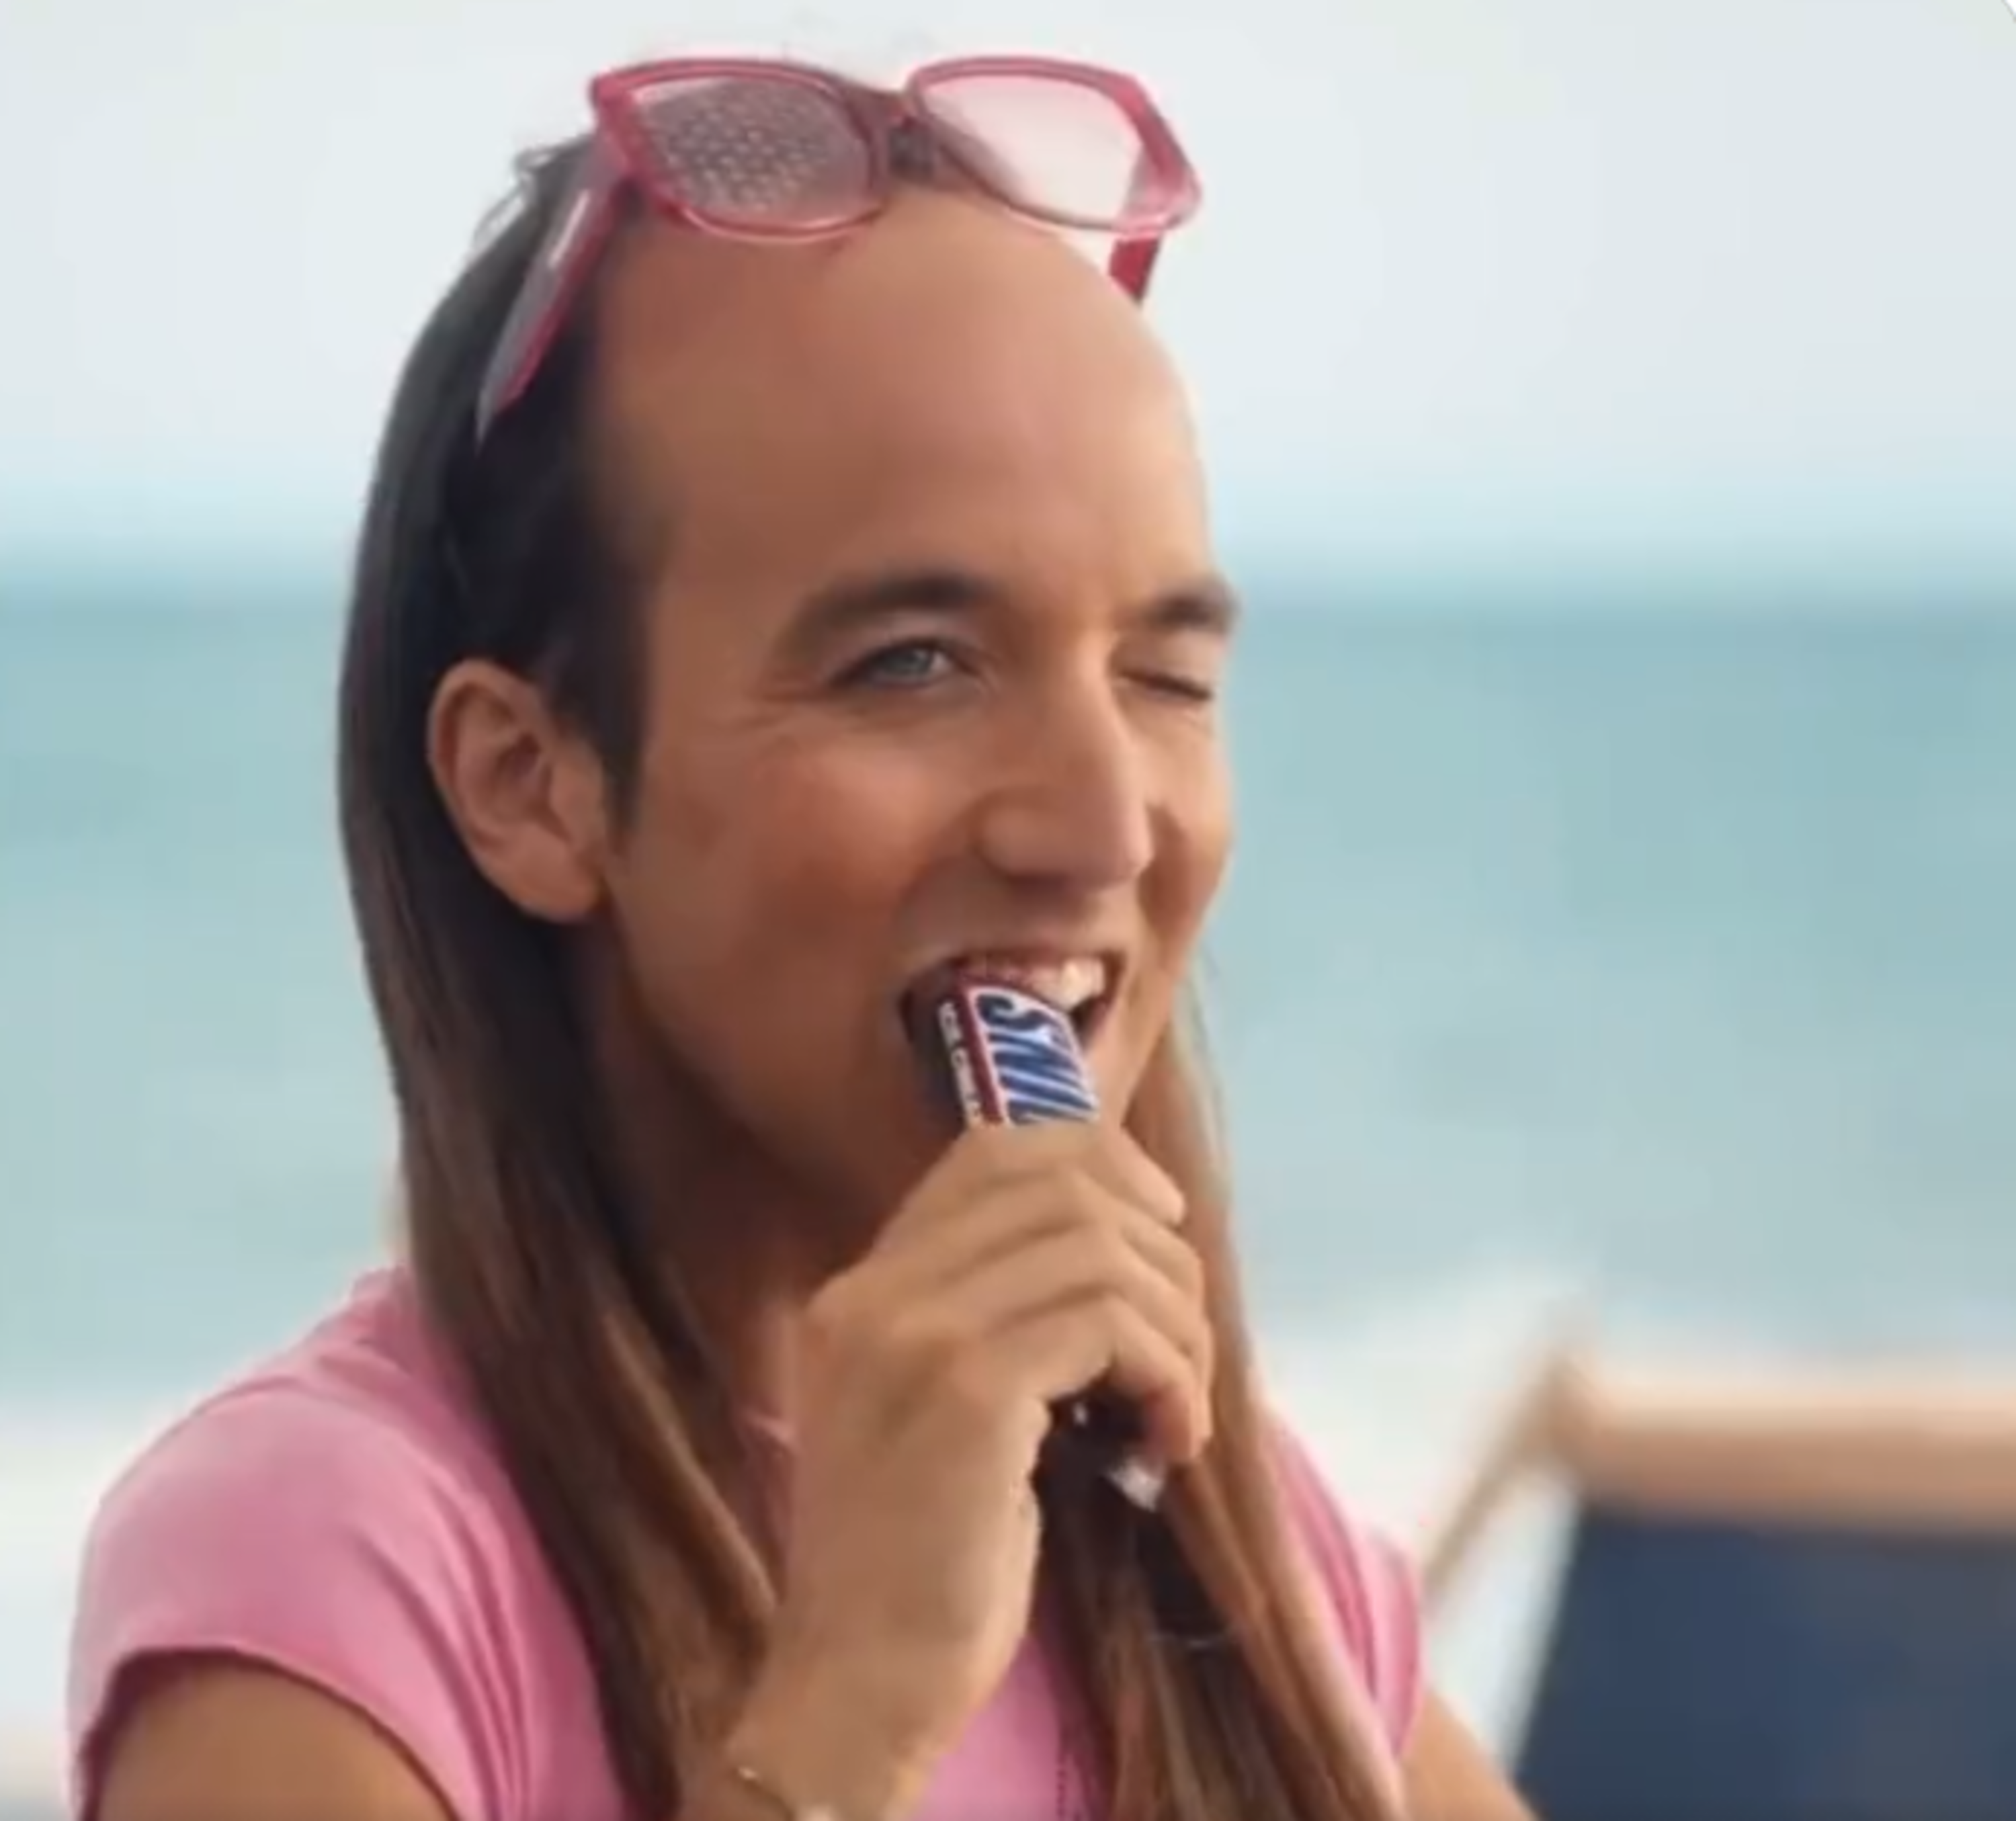 Allau de crítiques pel polèmic anunci "plumòfob" de la marca Snickers